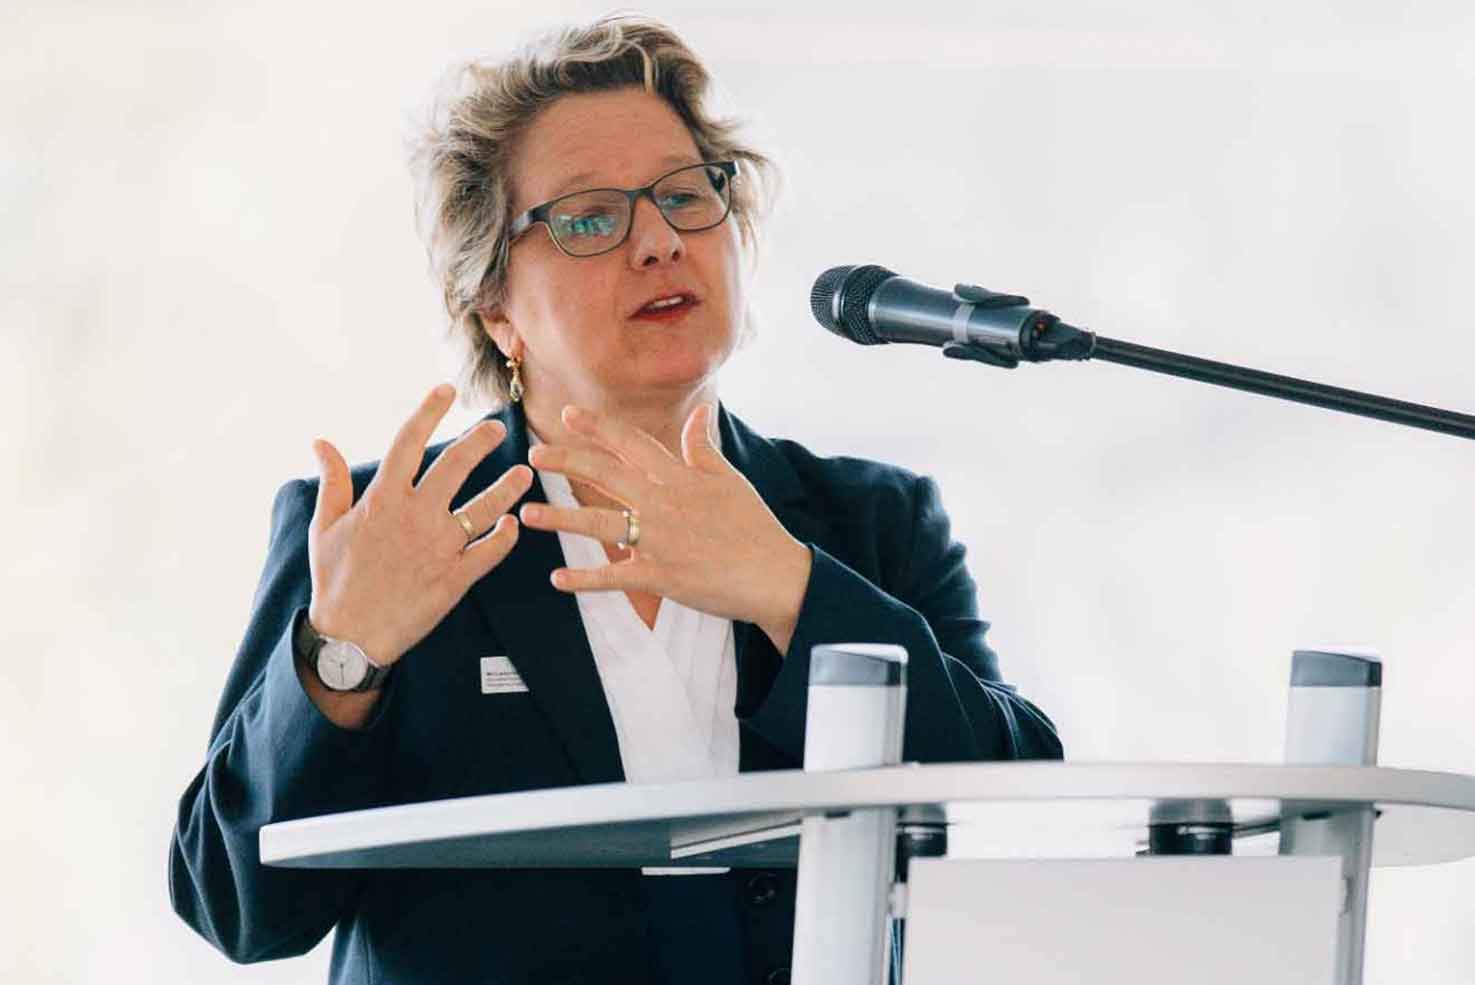 Svenja Schulze war als Ministerin für Innovation, Wissenschaft und Forschung des Landes Nordrhein-Westfalen zur Institutseröffnung vor Ort.